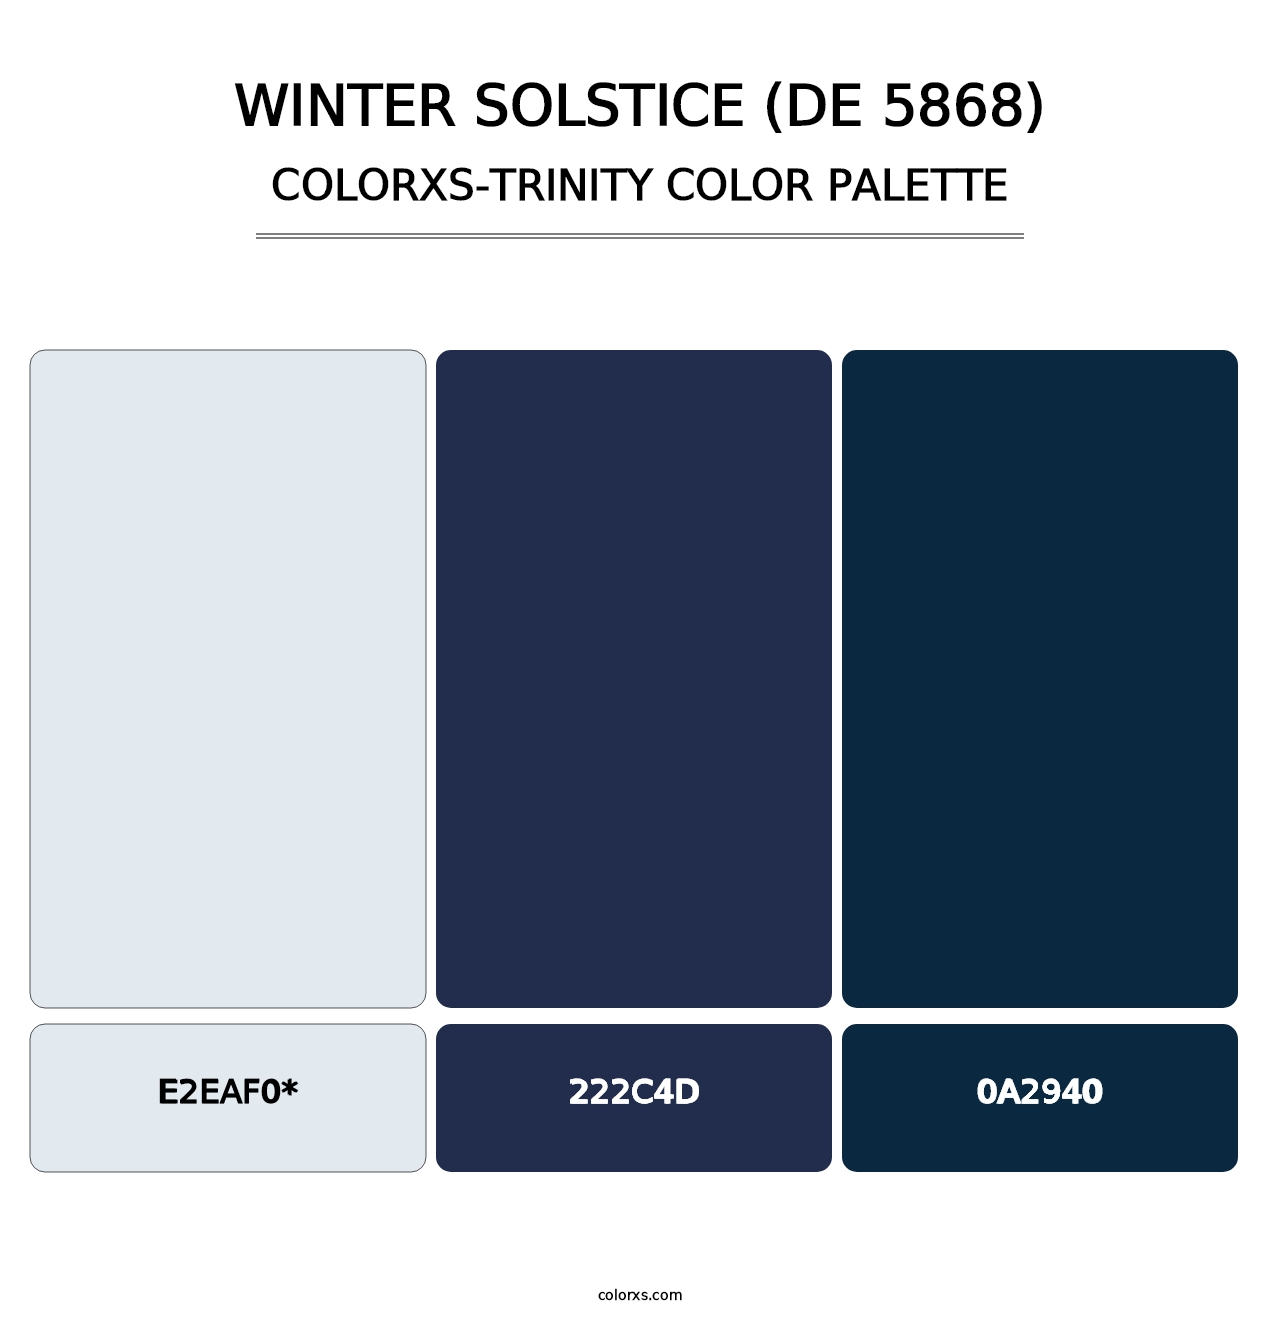 Winter Solstice (DE 5868) - Colorxs Trinity Palette